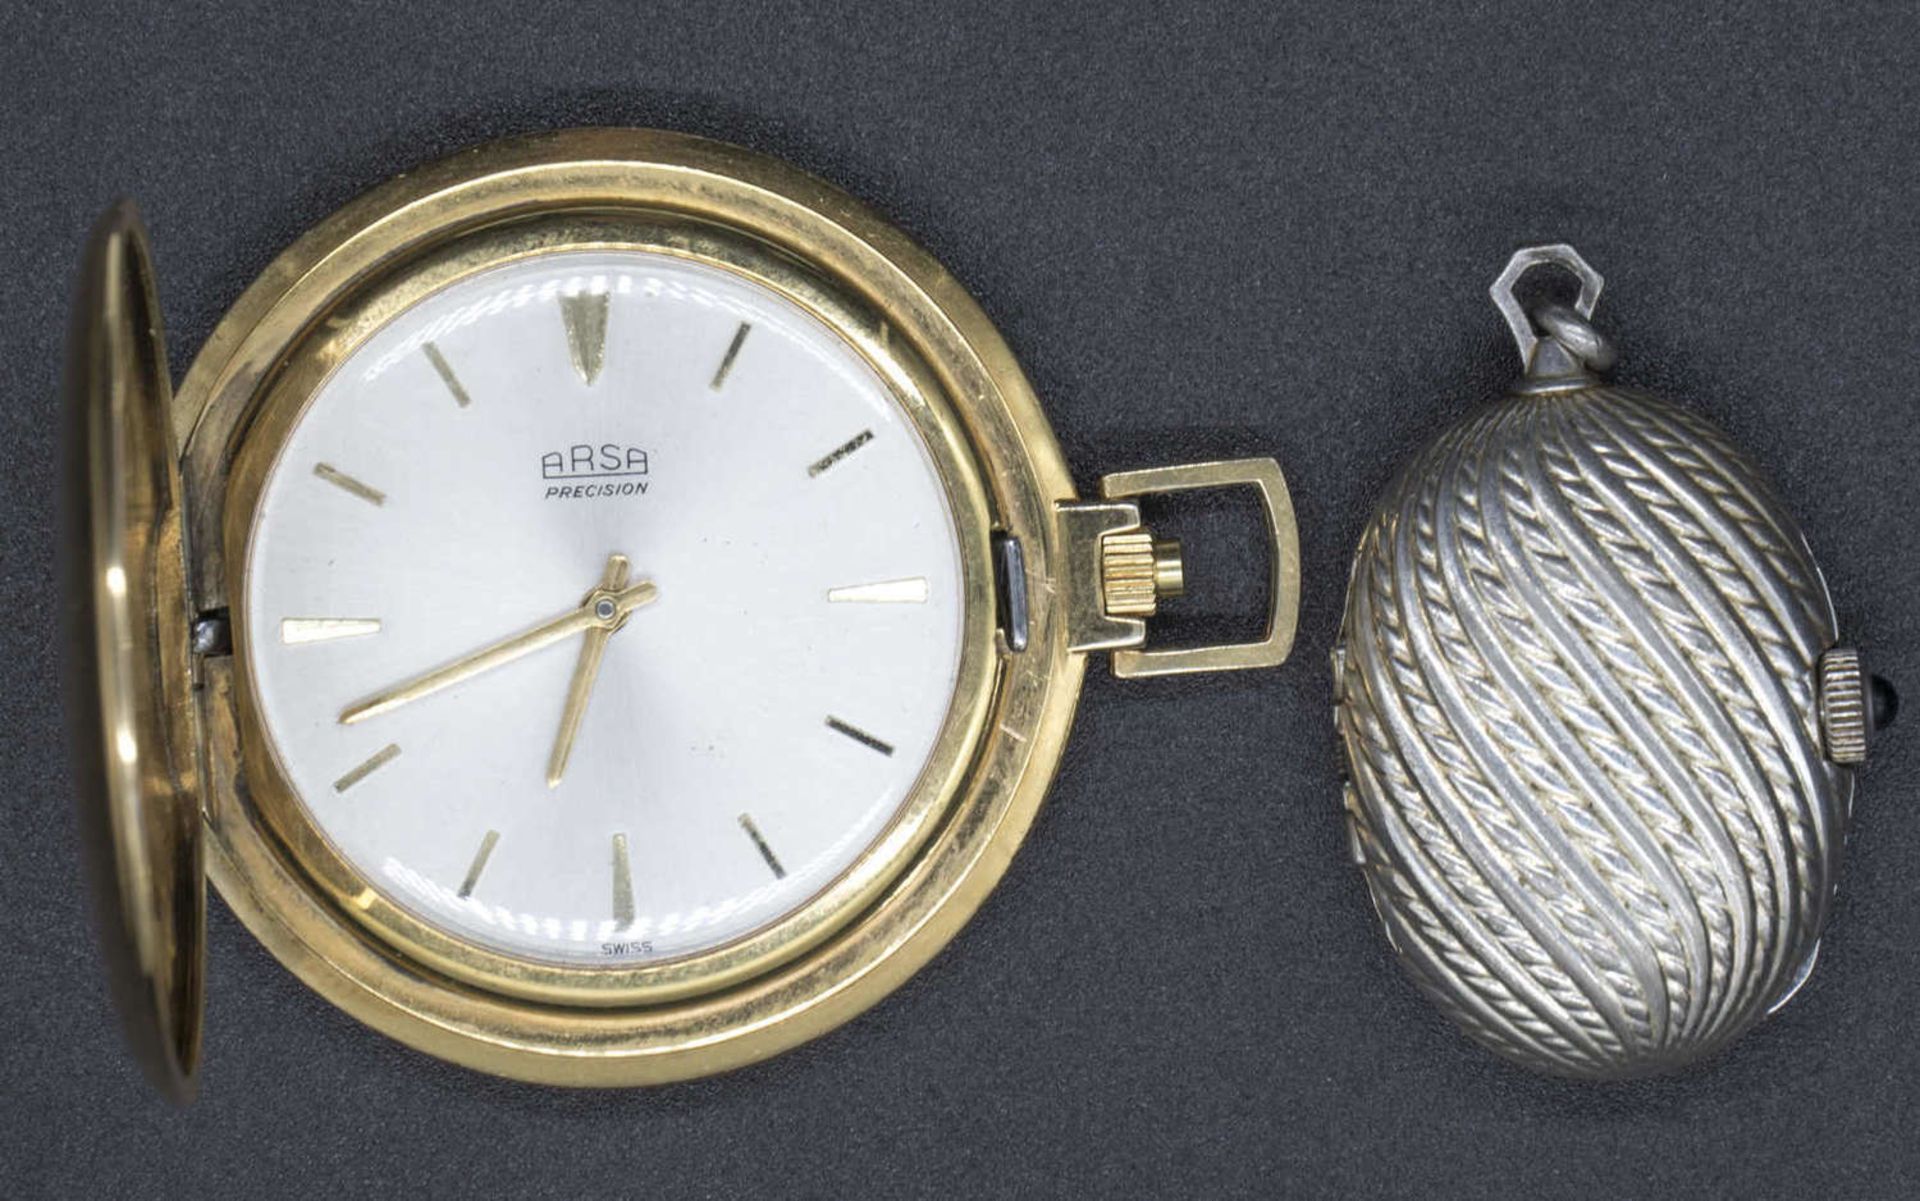 Zwei Taschenuhre: 1. Arsa Taschenuhr, vergoldet, 17 Rubis. Handaufzug, die Uhr läuft an. 2. Royal